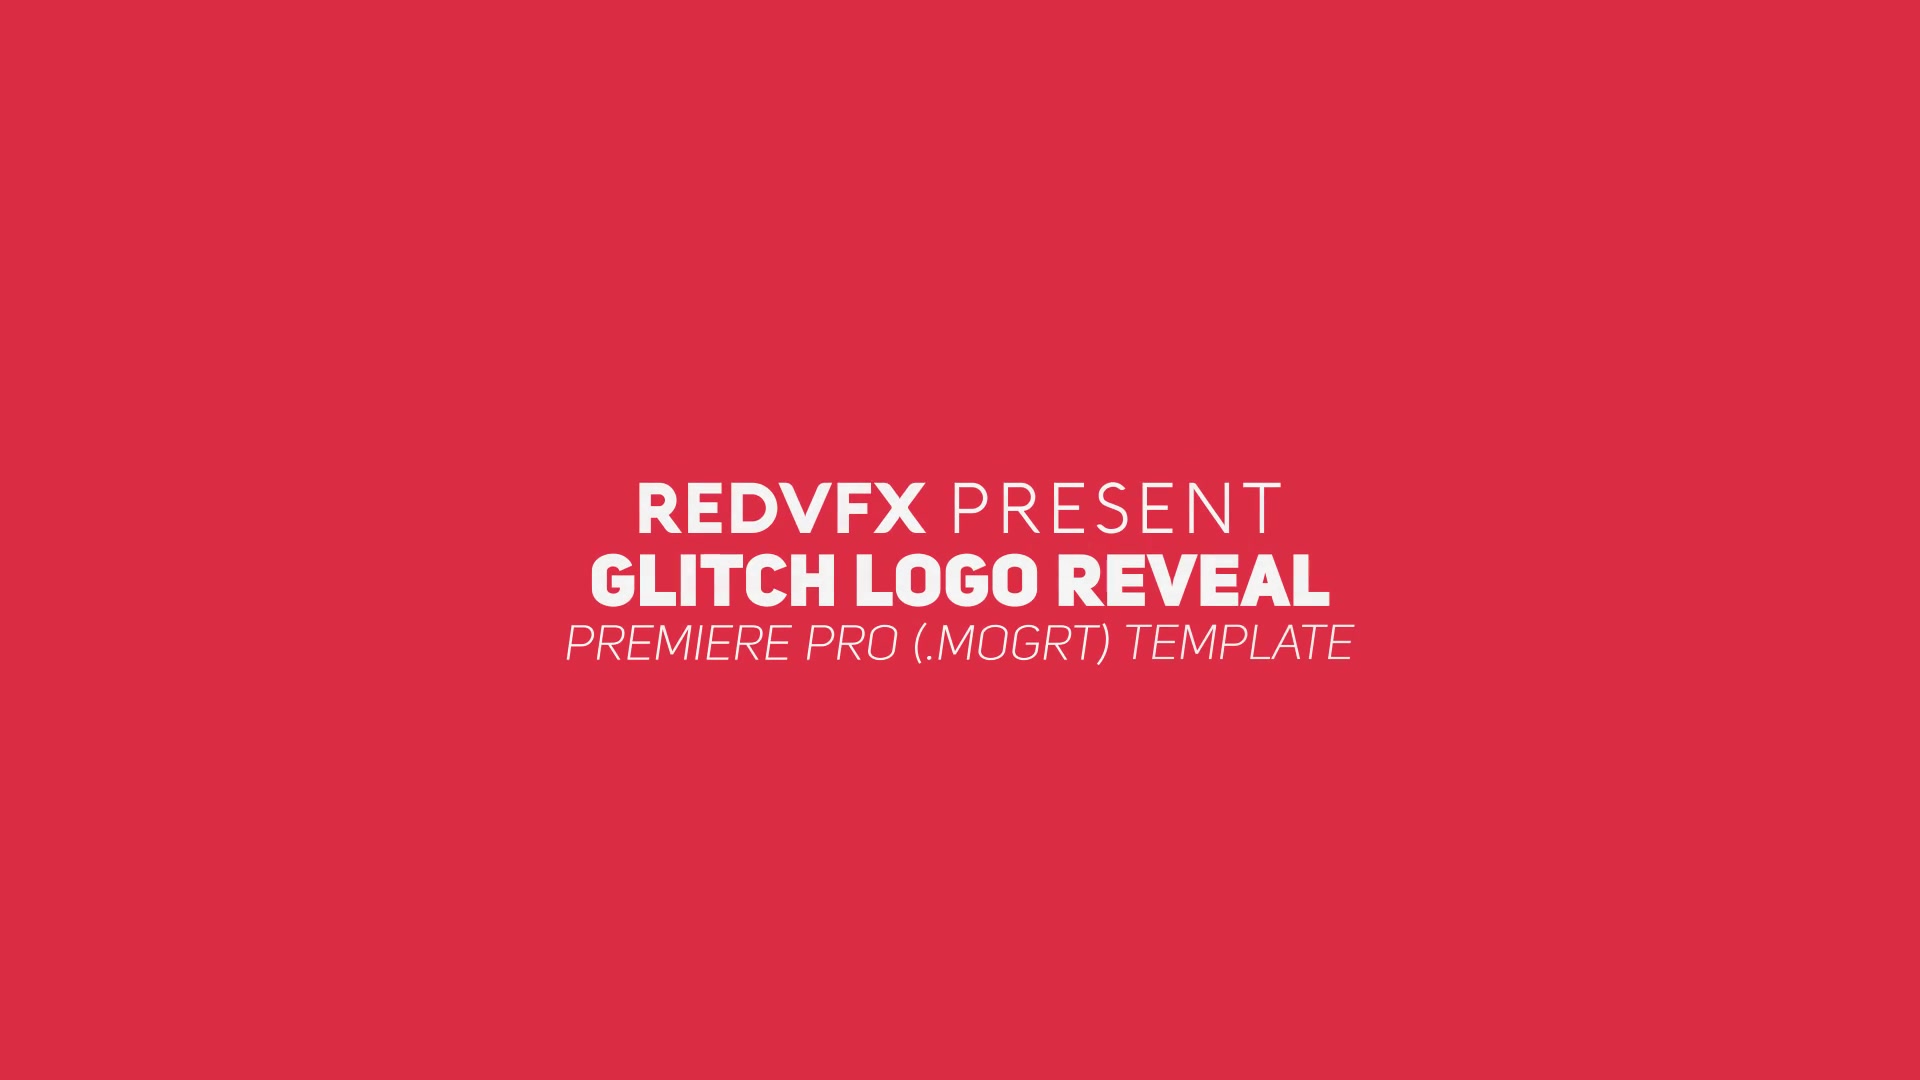 Glitch Logo Reveal Premiere Pro Videohive 23334229 Premiere Pro Image 2